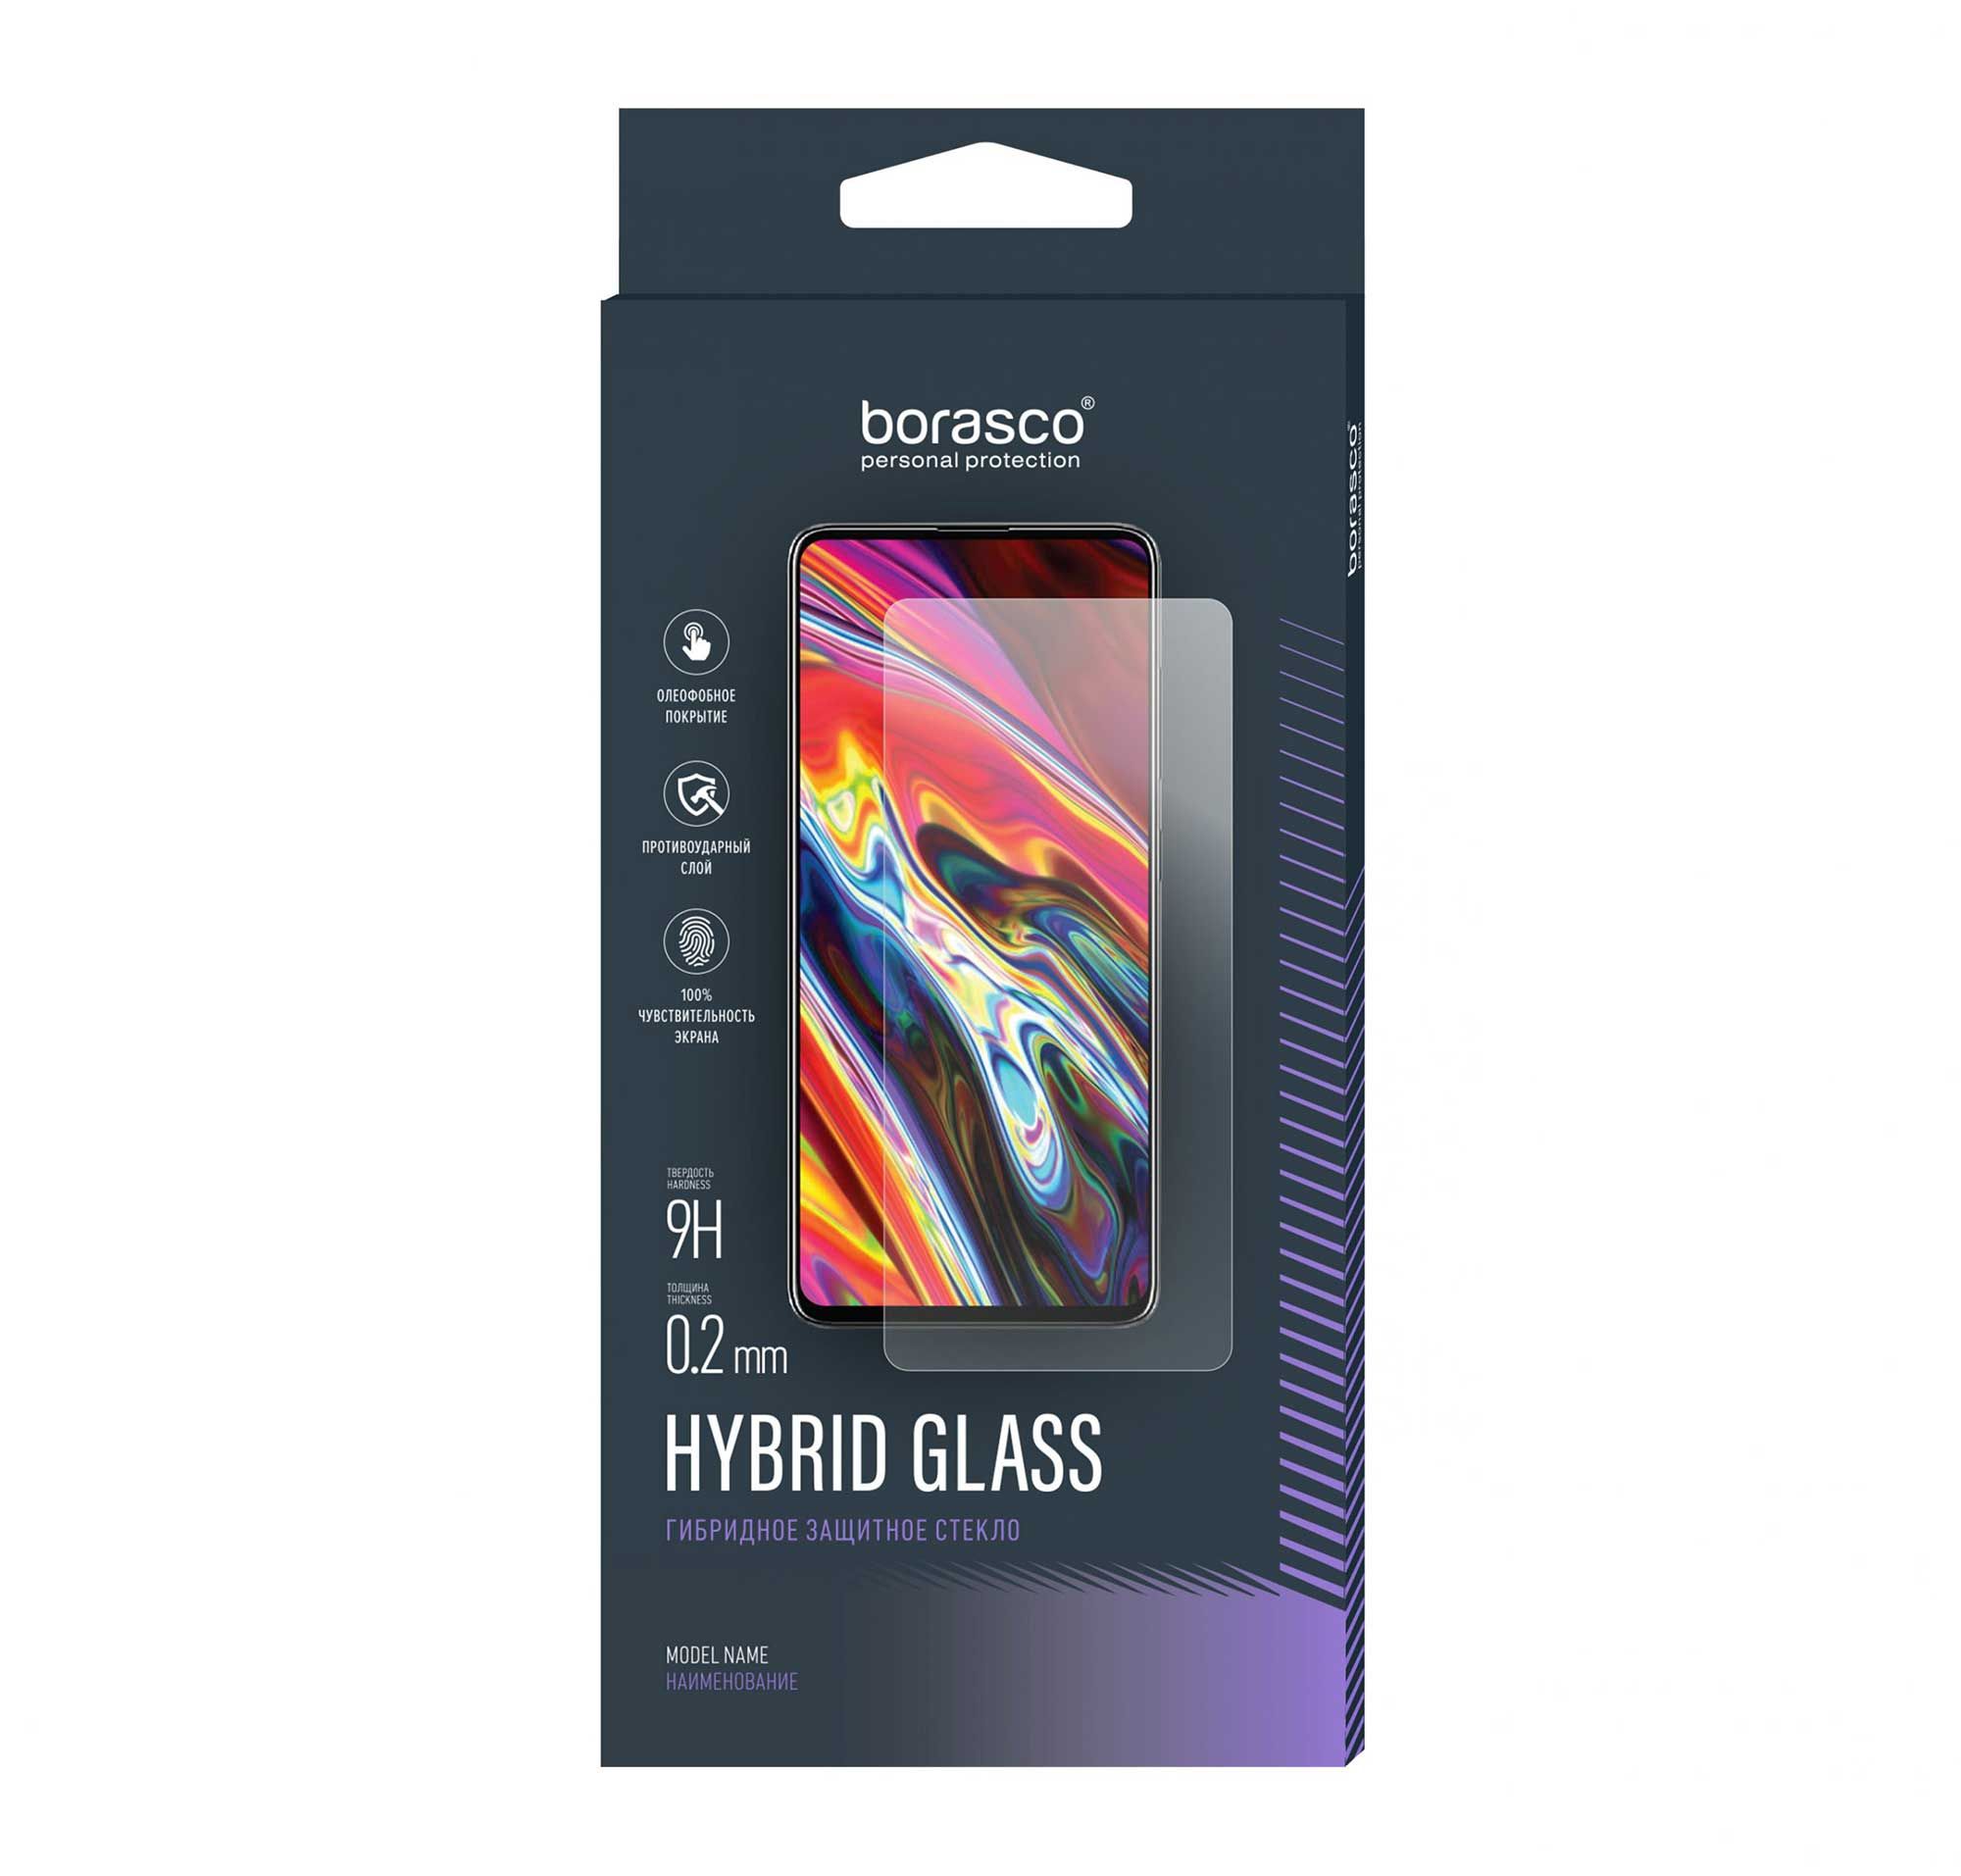 Защитное стекло Hybrid Glass для OPPO A78 4G 6 в 1 для oppo a78 стекло oppo a78 4g закаленное стекло 9h hd полное клеевое покрытие защитная пленка для экрана стекло для объектива oppo a78